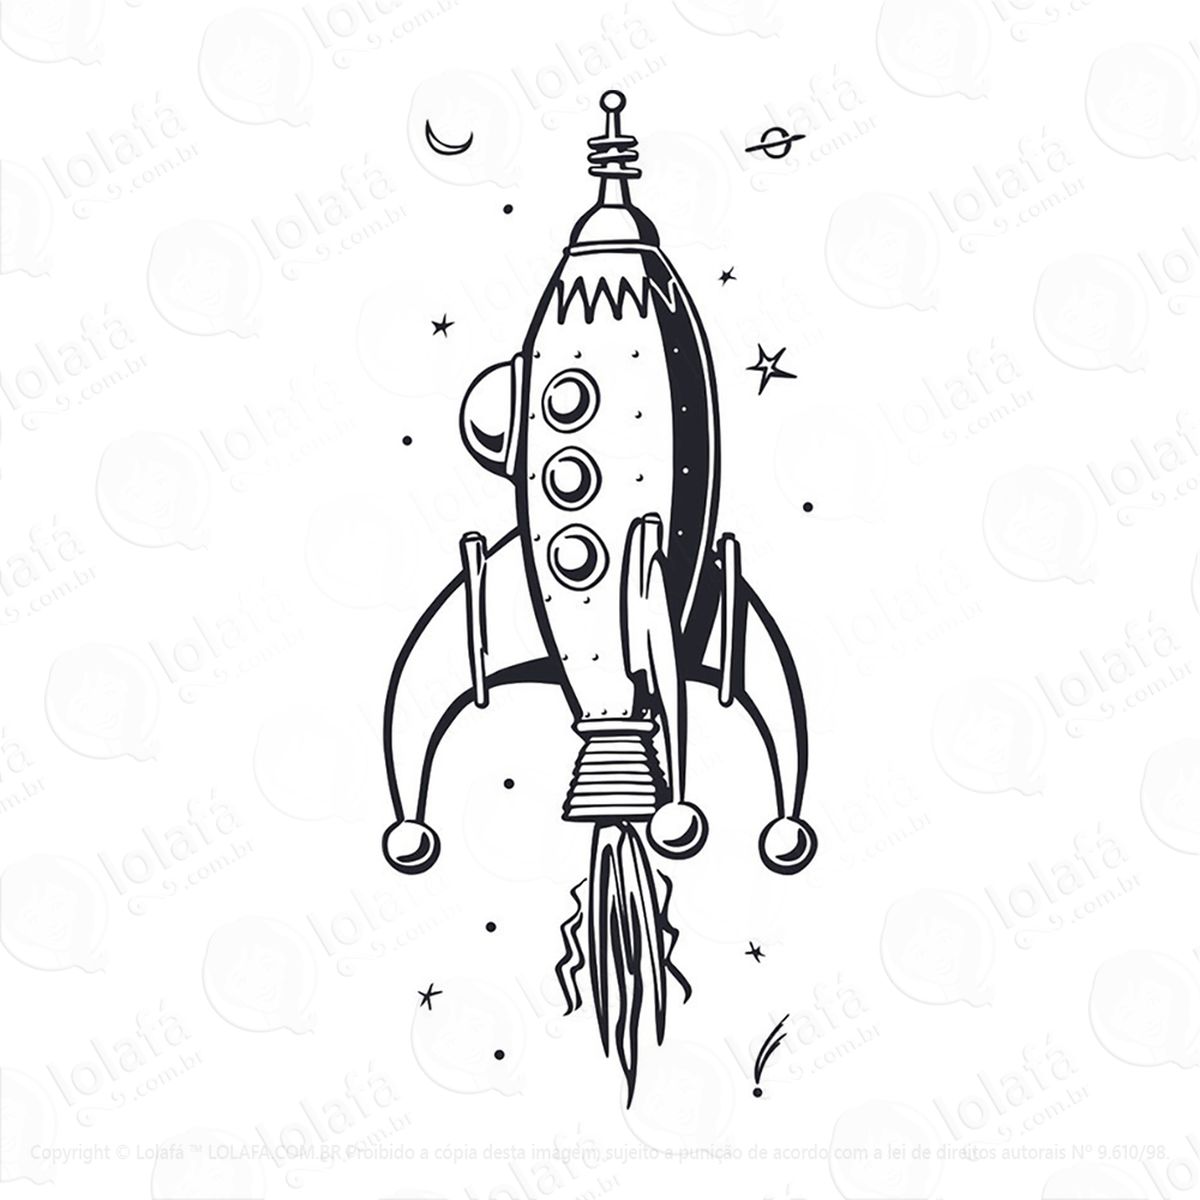 adesivo foguete espaço infantil 38x90cm mod:211